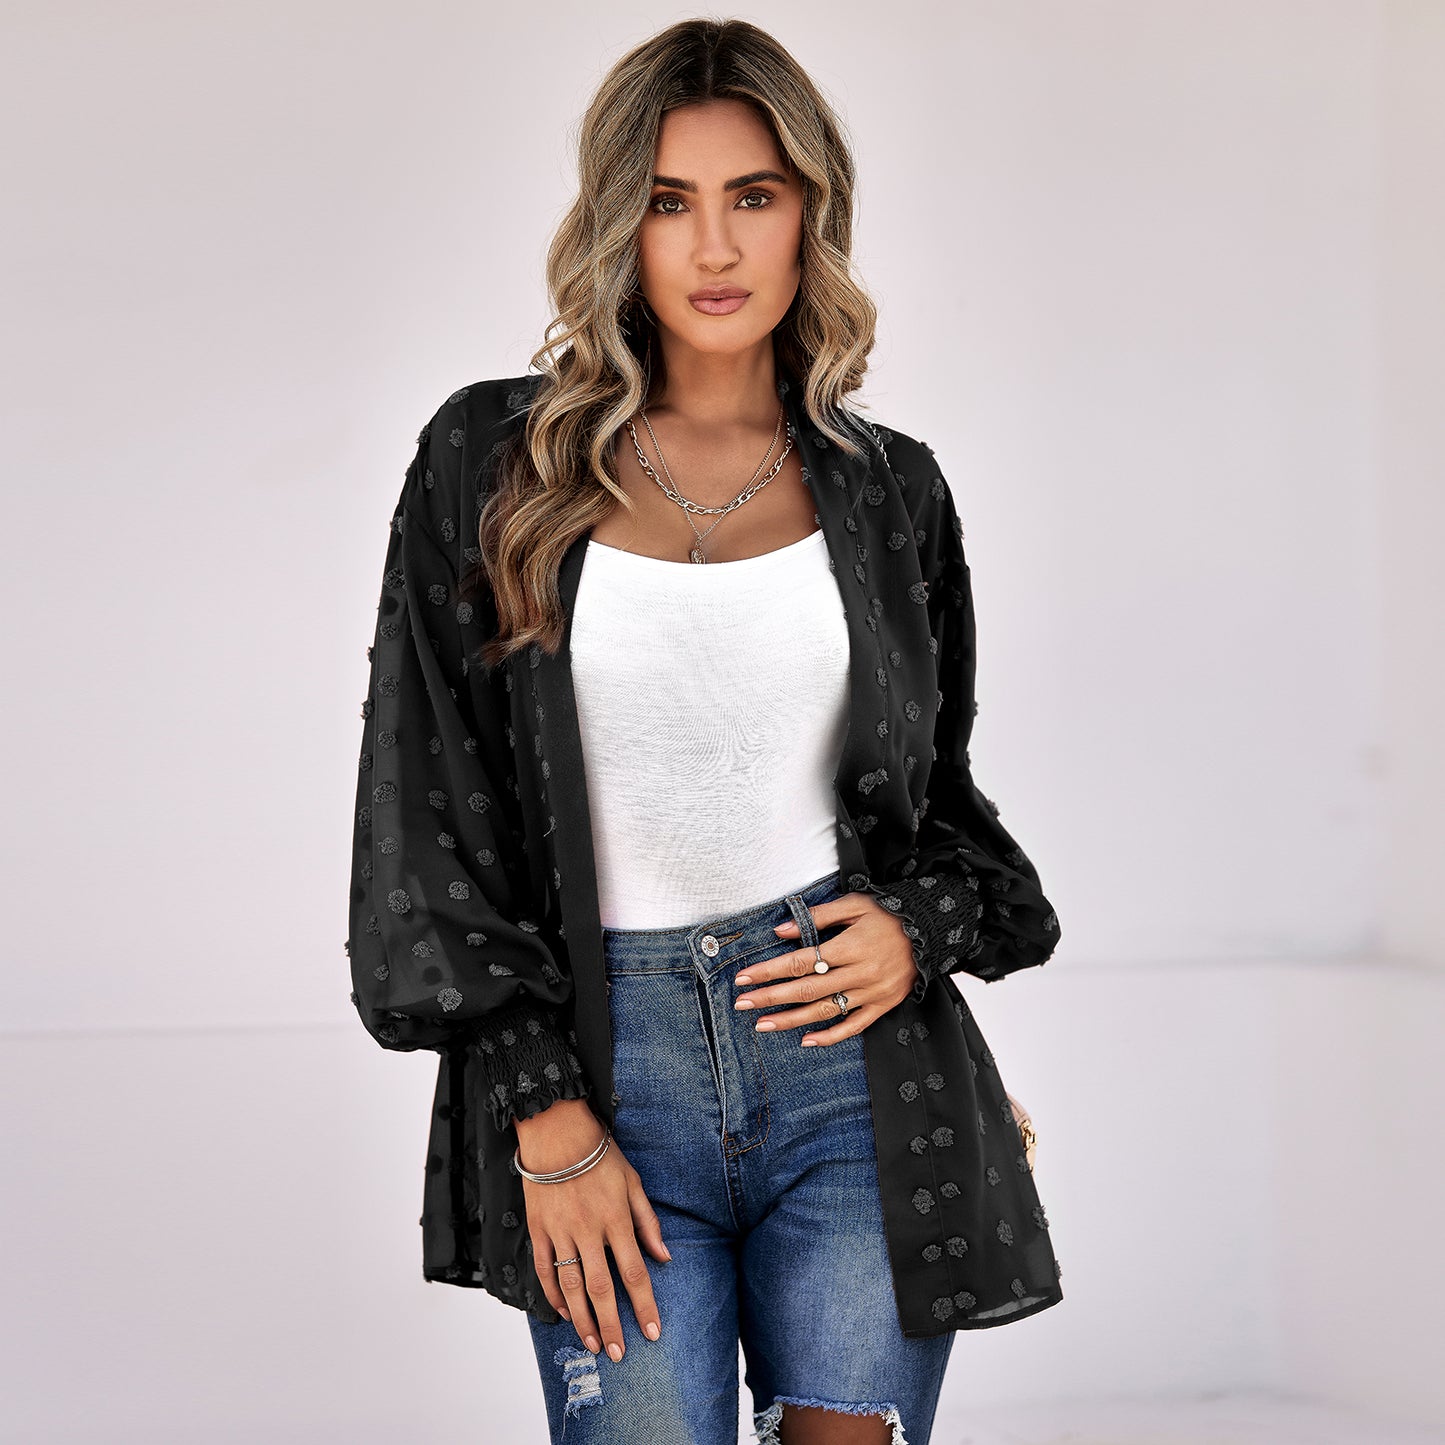 YESFASHION Women's Clothing Thin Cardigan Jacket Tops